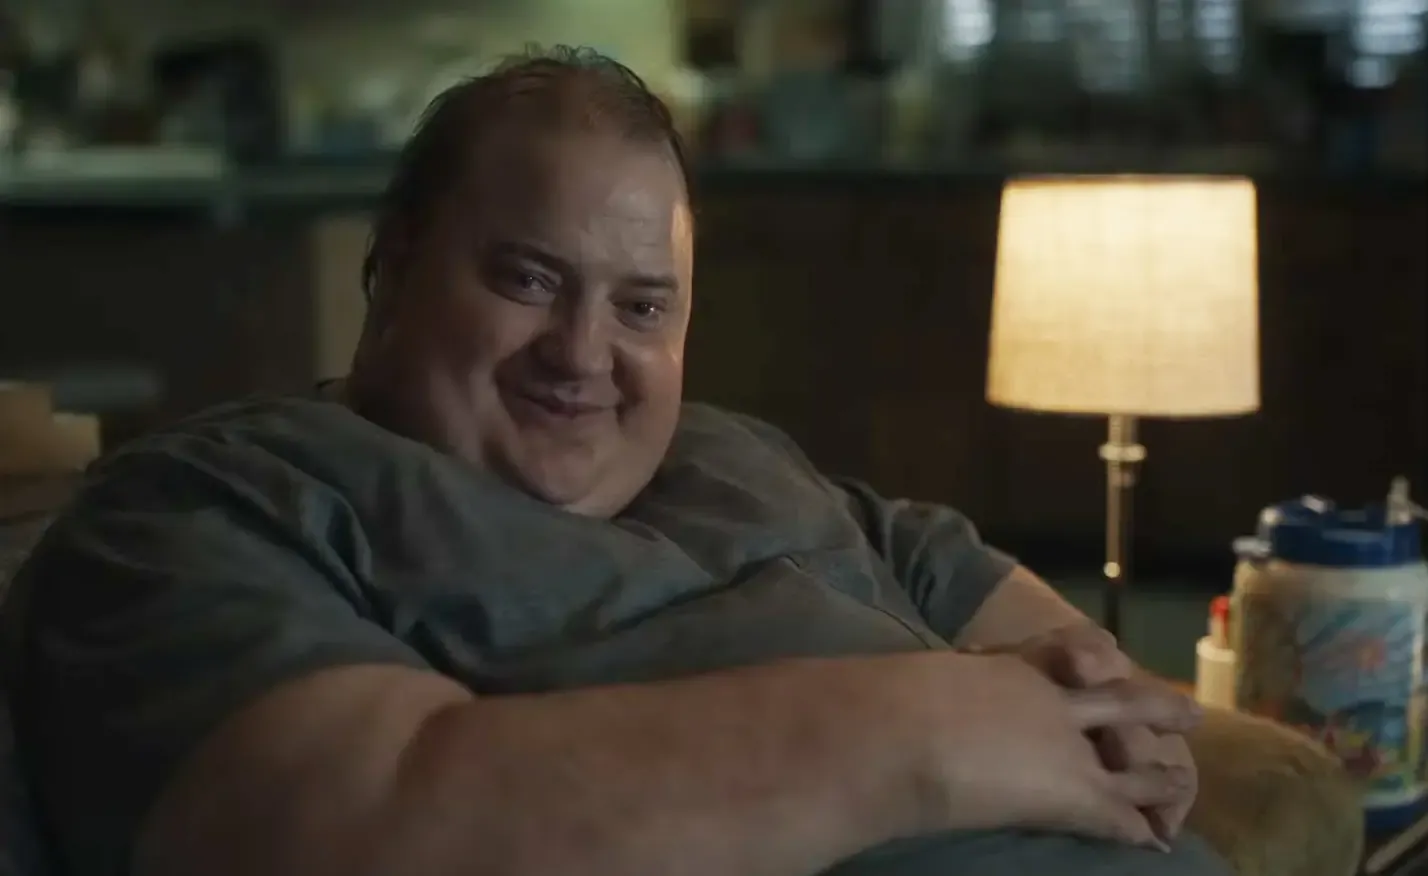 En "La ballena", Brendan Fraser interpreta a un hombre con obesidad mórbida que se enfrenta a su propia mortalidad y busca la redención. (Créditos: A24)